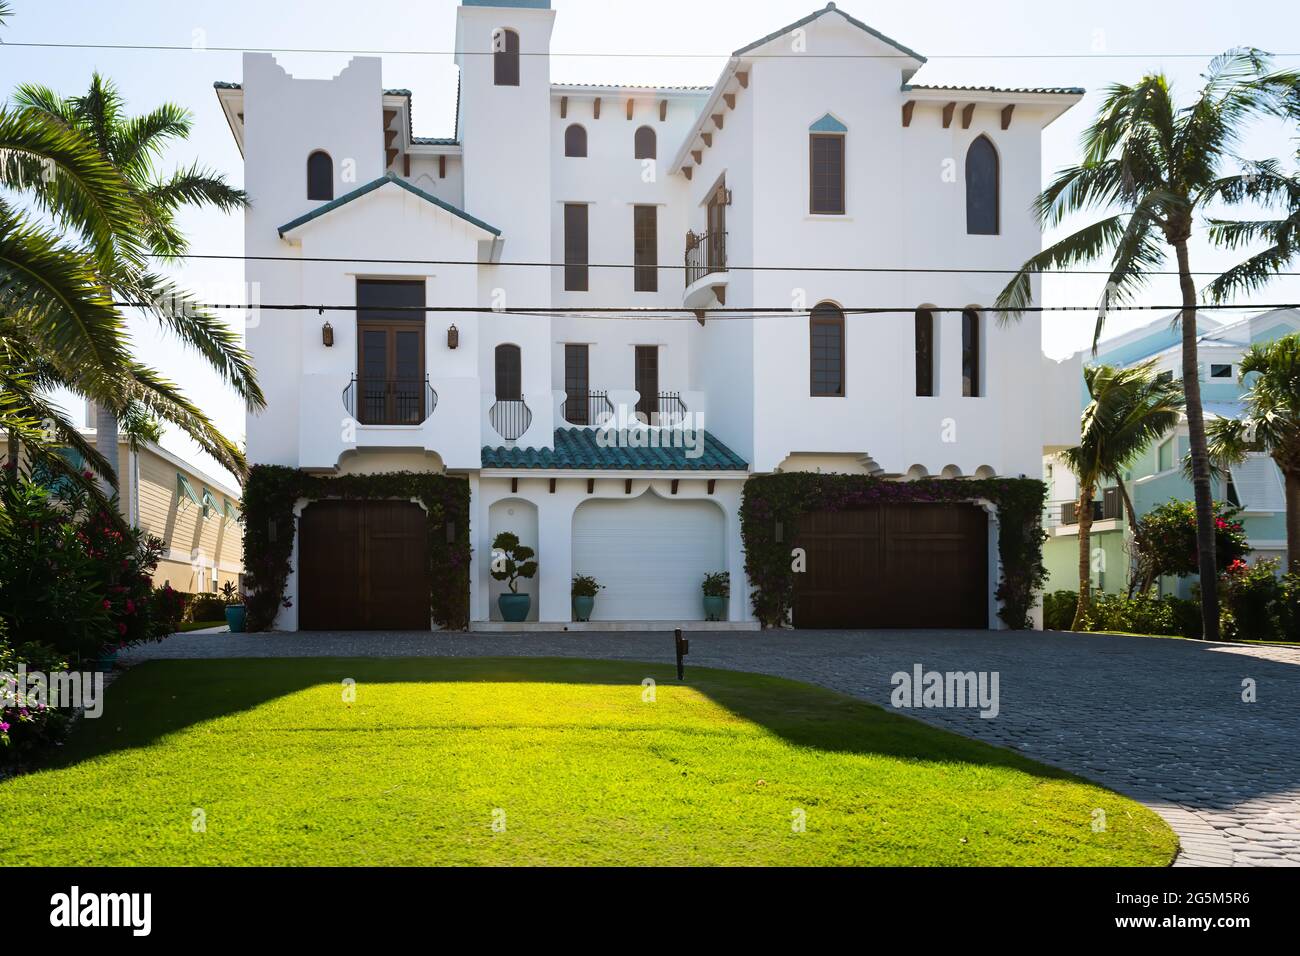 Bonita Springs, Florida Golf von mexiko Küste mit weißen Luxusvilla Herrenhaus moderne Waterfront Architektur und Auffahrt zur Garage Stockfoto